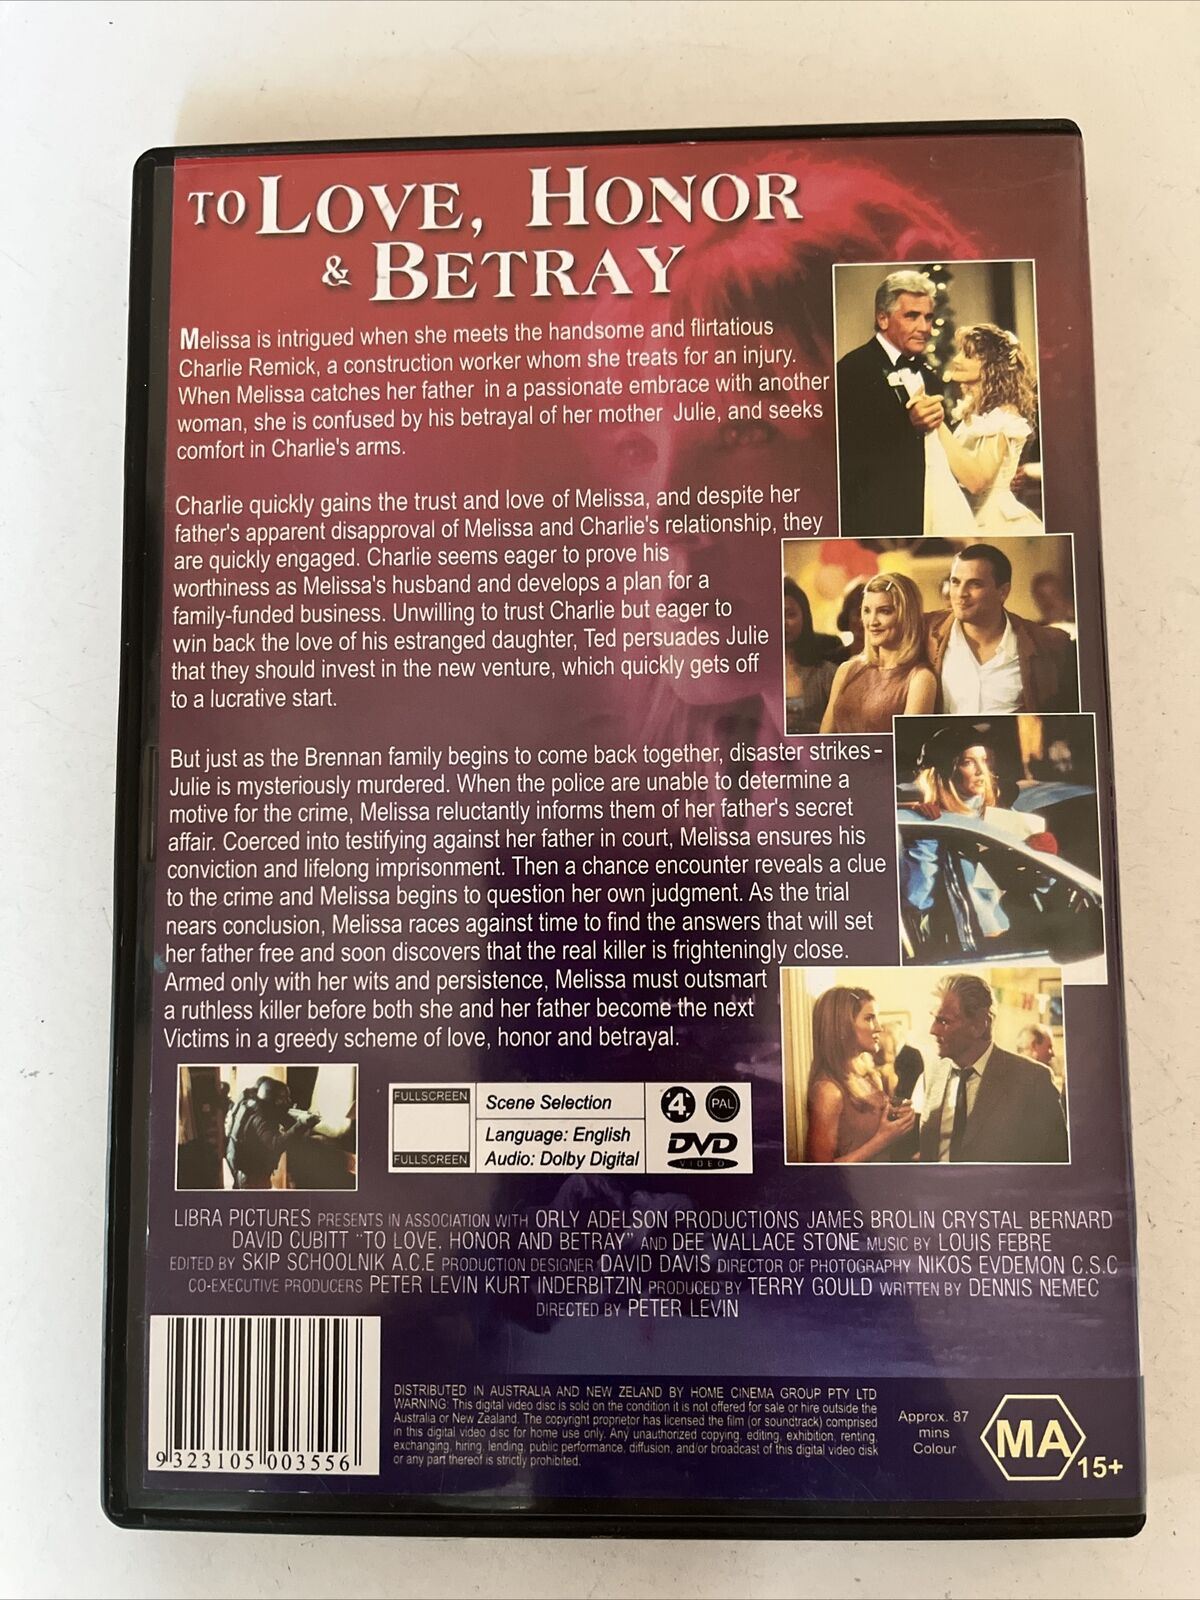 To Love, Honor & Betray (DVD, 1999) James Brolin, Crystal Bernard. Region 4